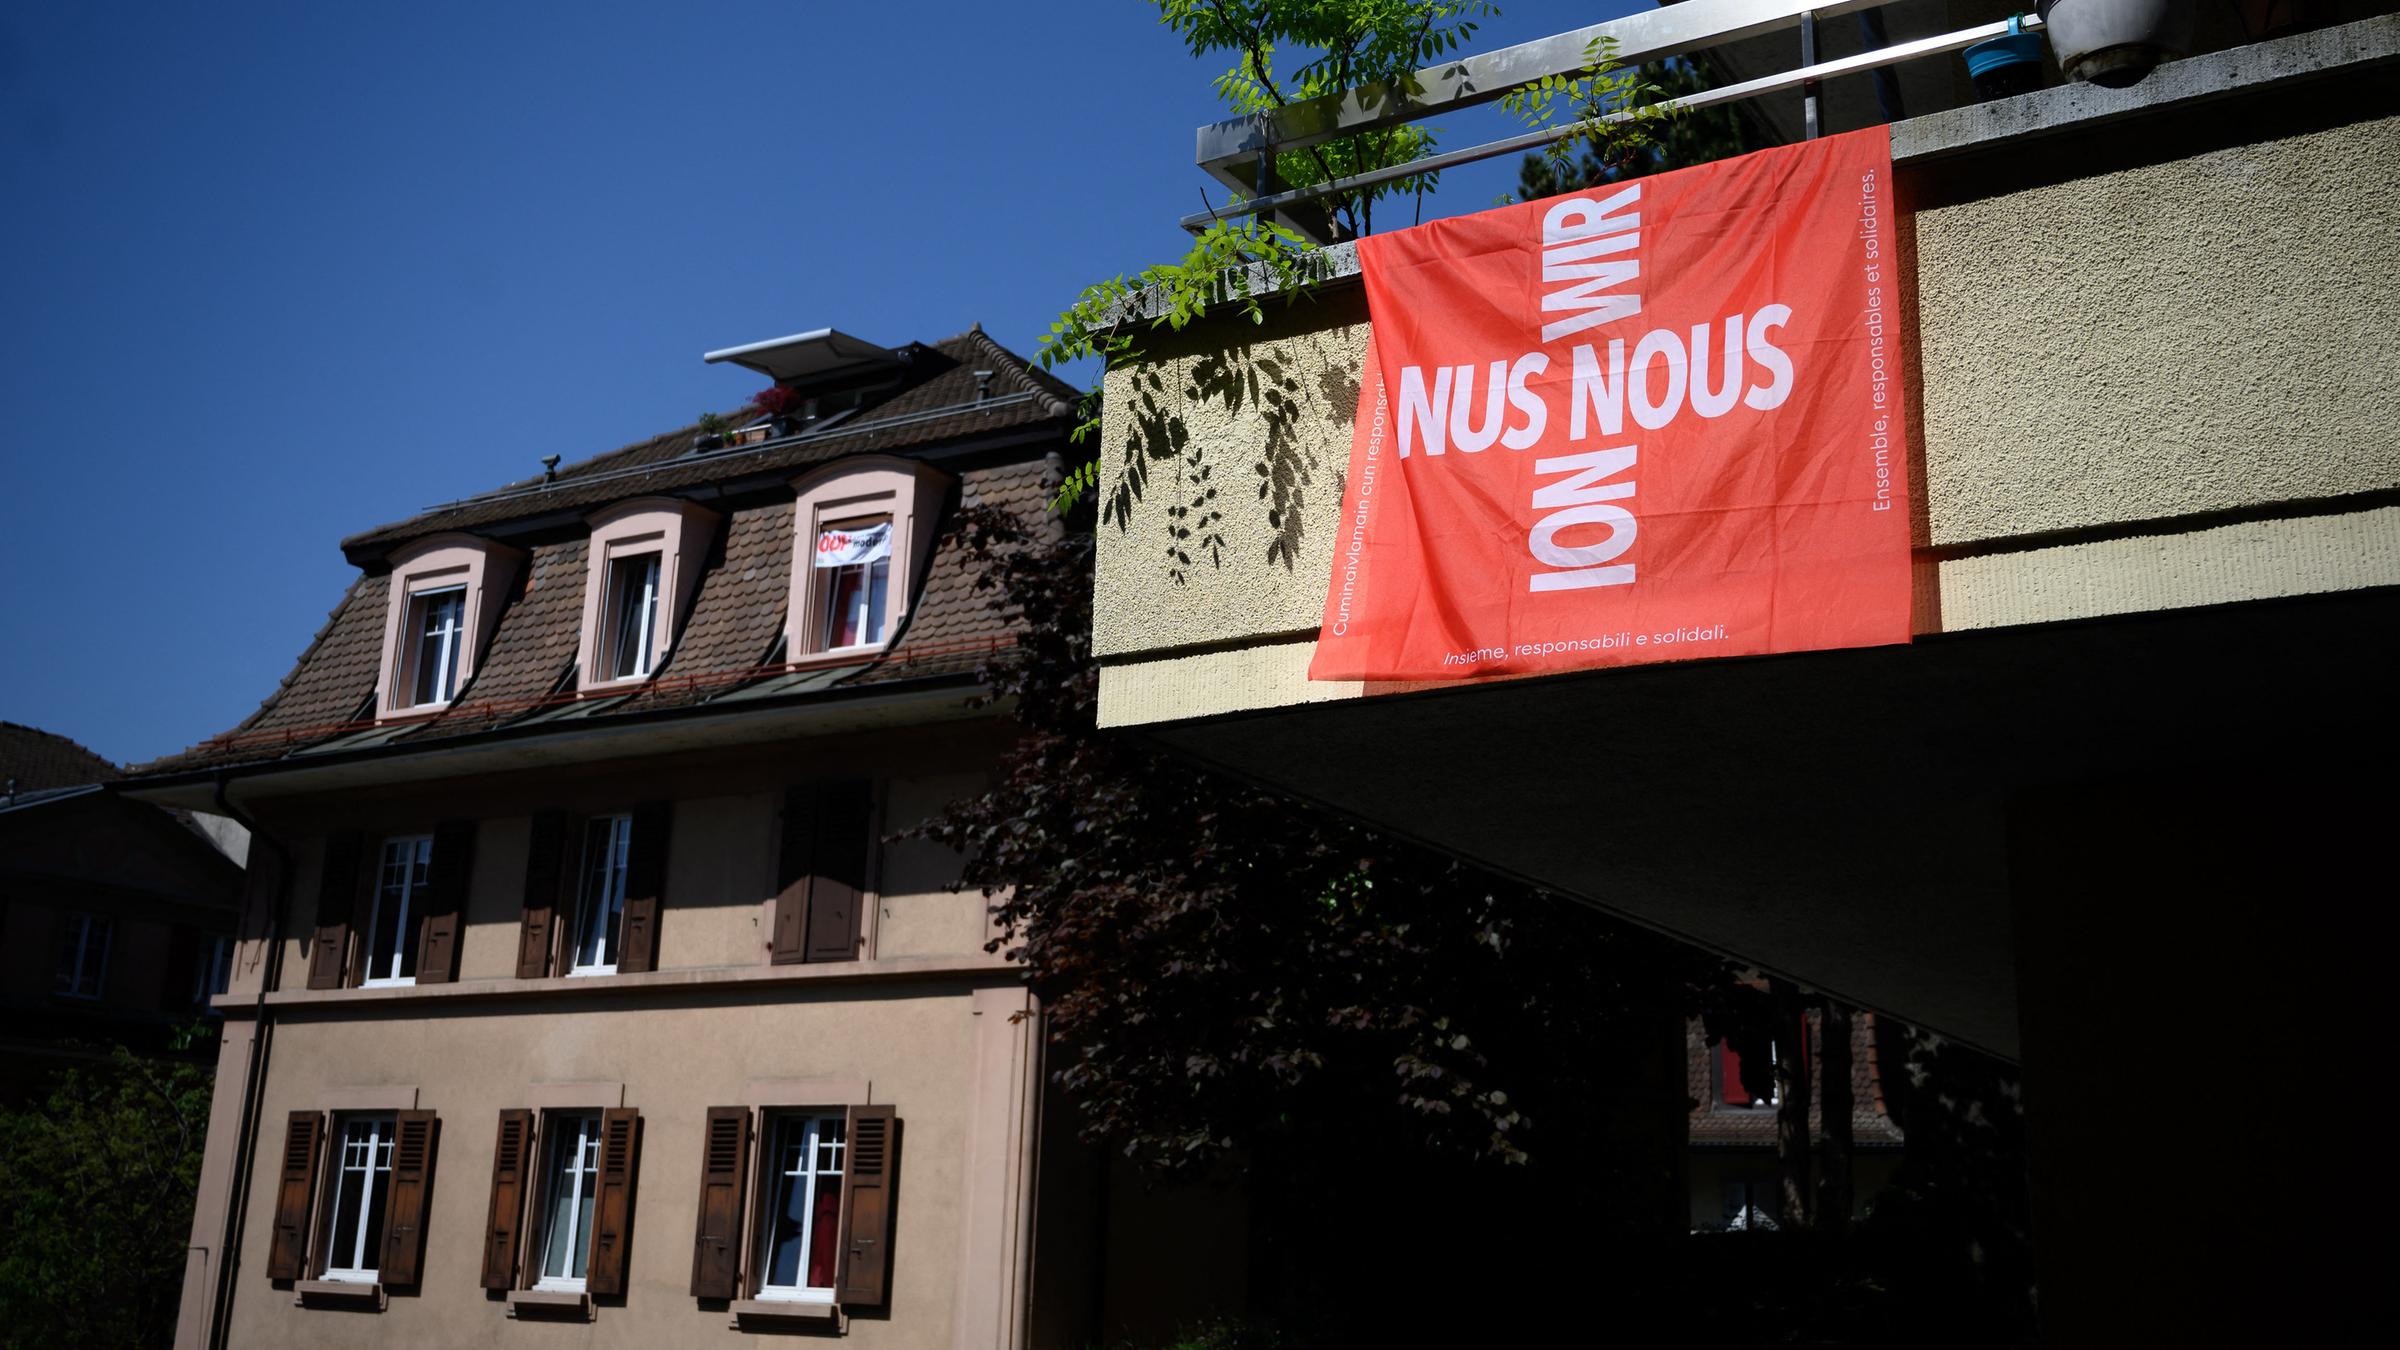 Flagge mit dem Schweizer Kreuz, das aus dem Wort "Wir" in den vier Schweizer Landessprache gebildet wird (Deutsch: Wir, Französisch: Nous, Italienisch: Noi und Rätoromanisch: Nus)